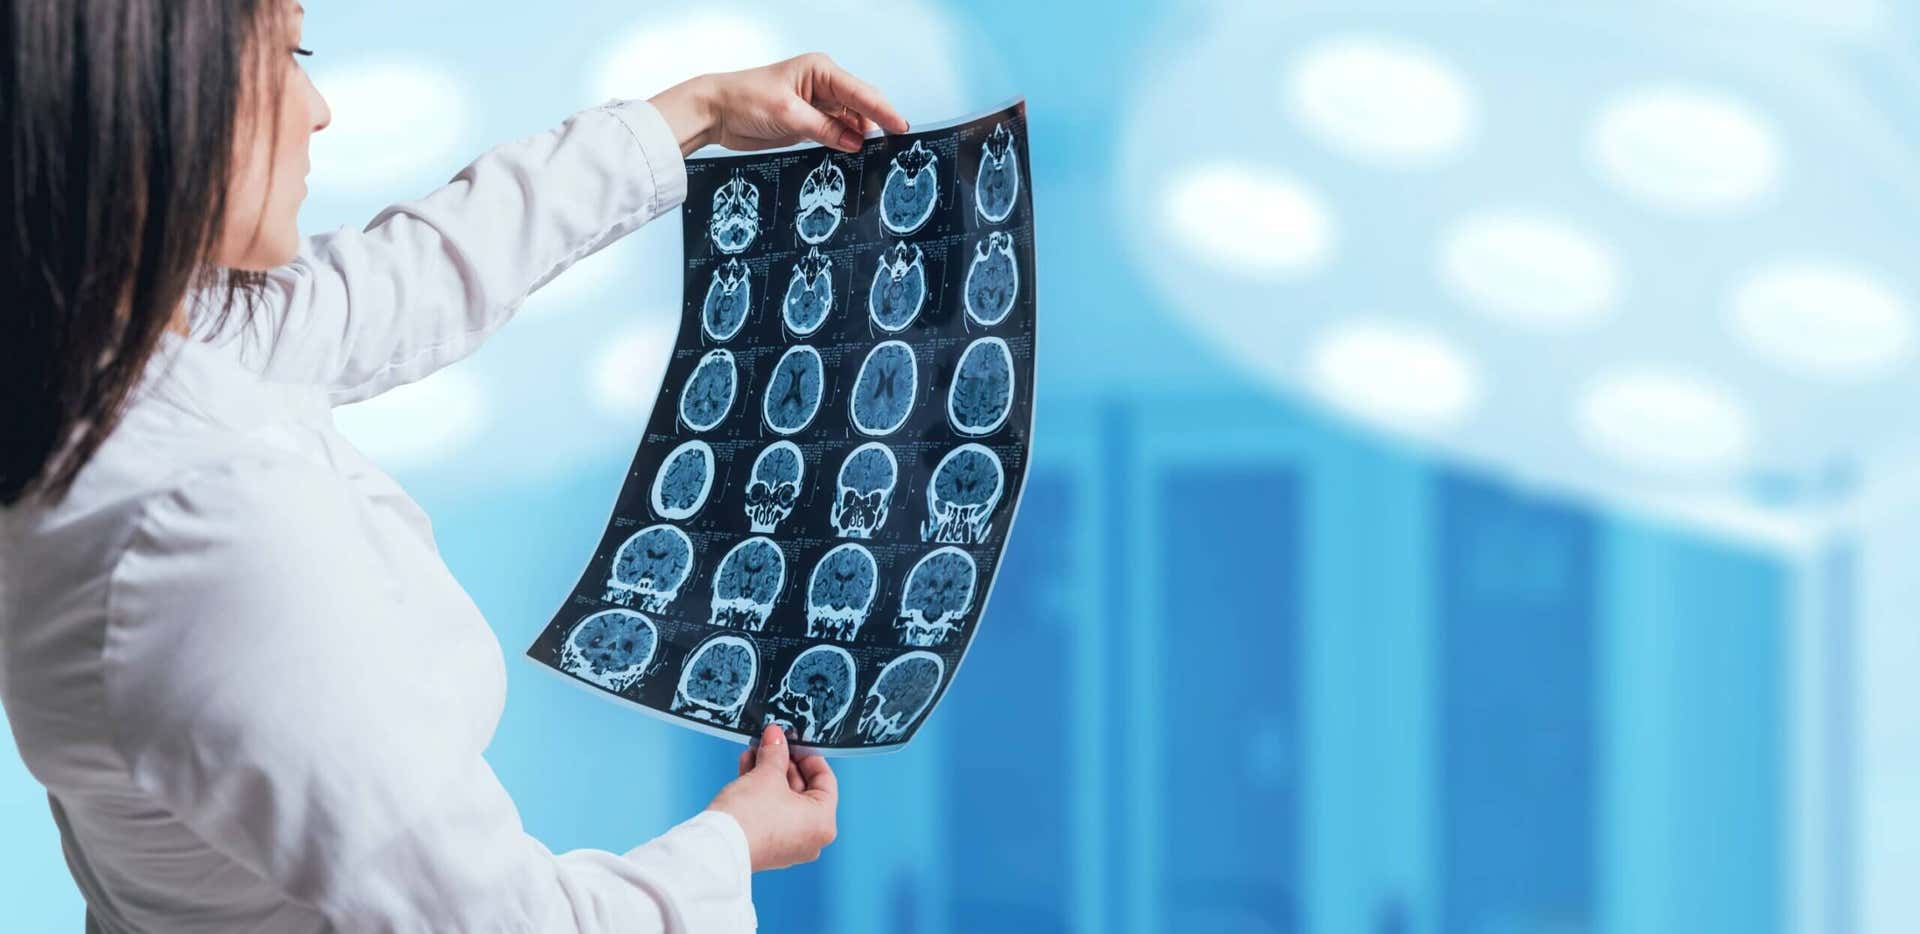 Angiografia cerebrale: caratteristiche, preparazione e rischi del test